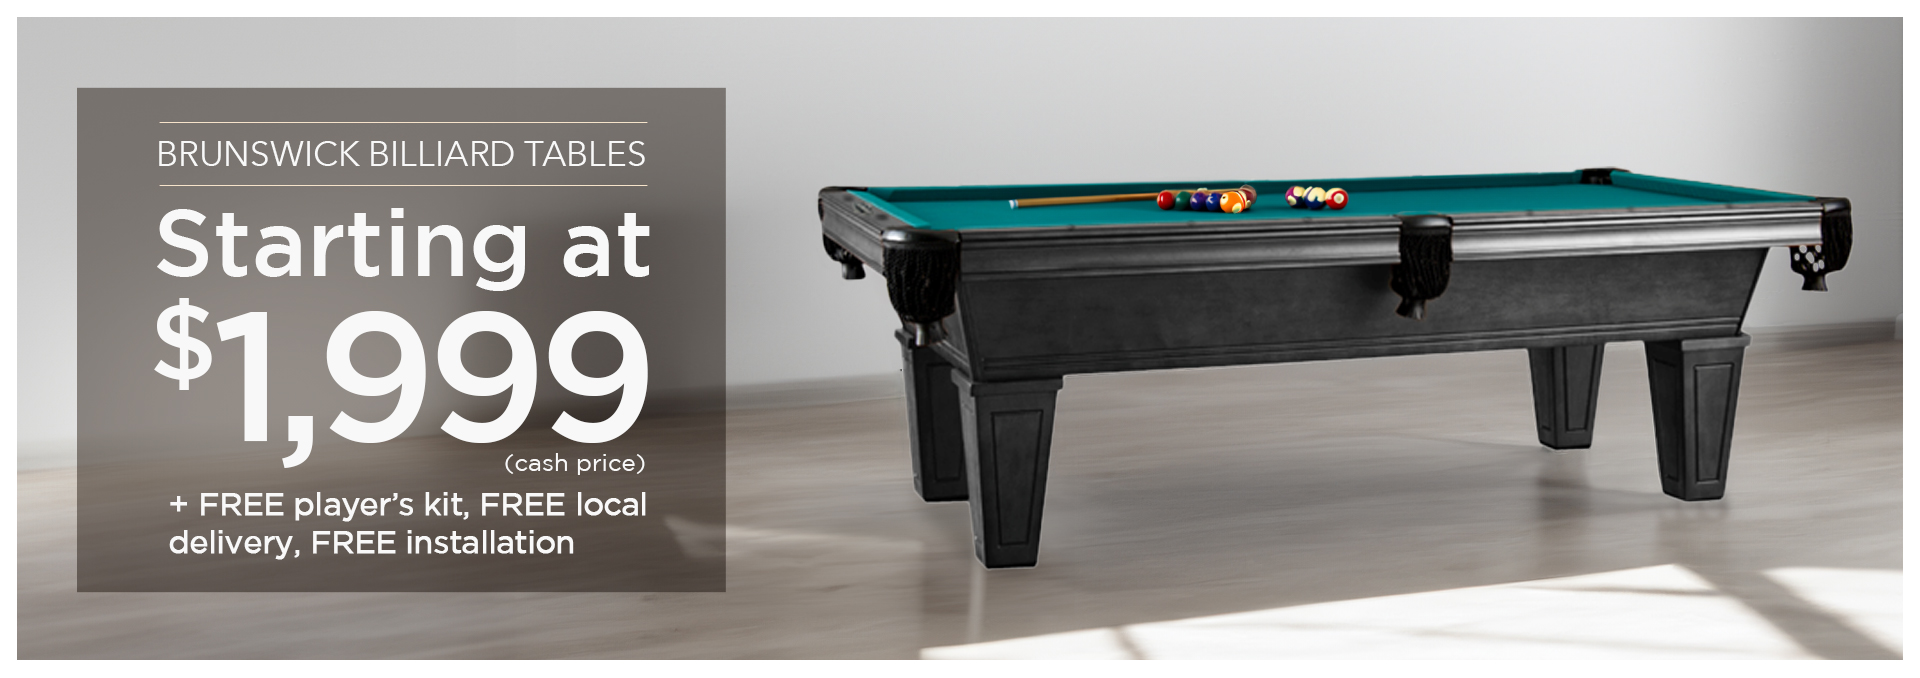 Brunswick Billiard Tables Starting at $1,999